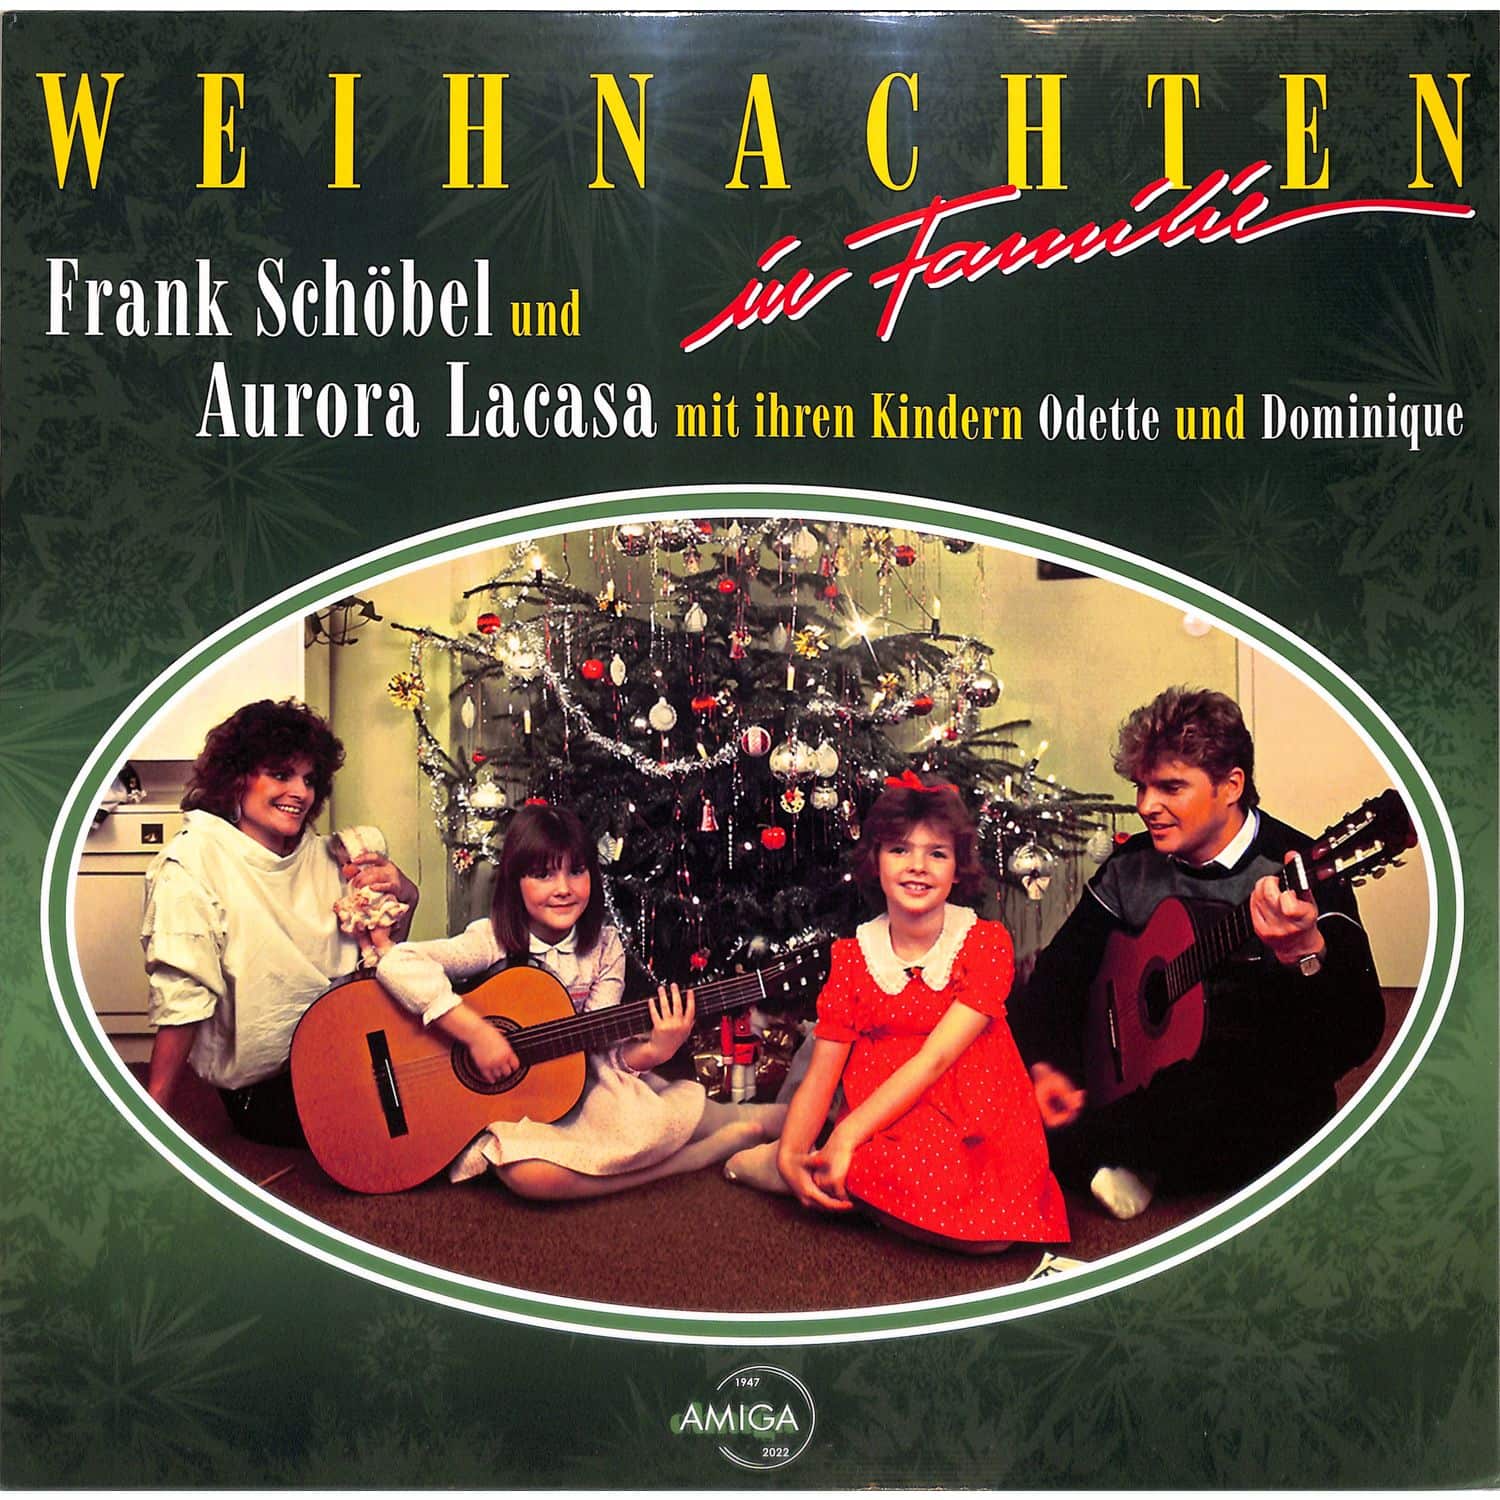 Frank Schbel - Weihnachten in Familie 